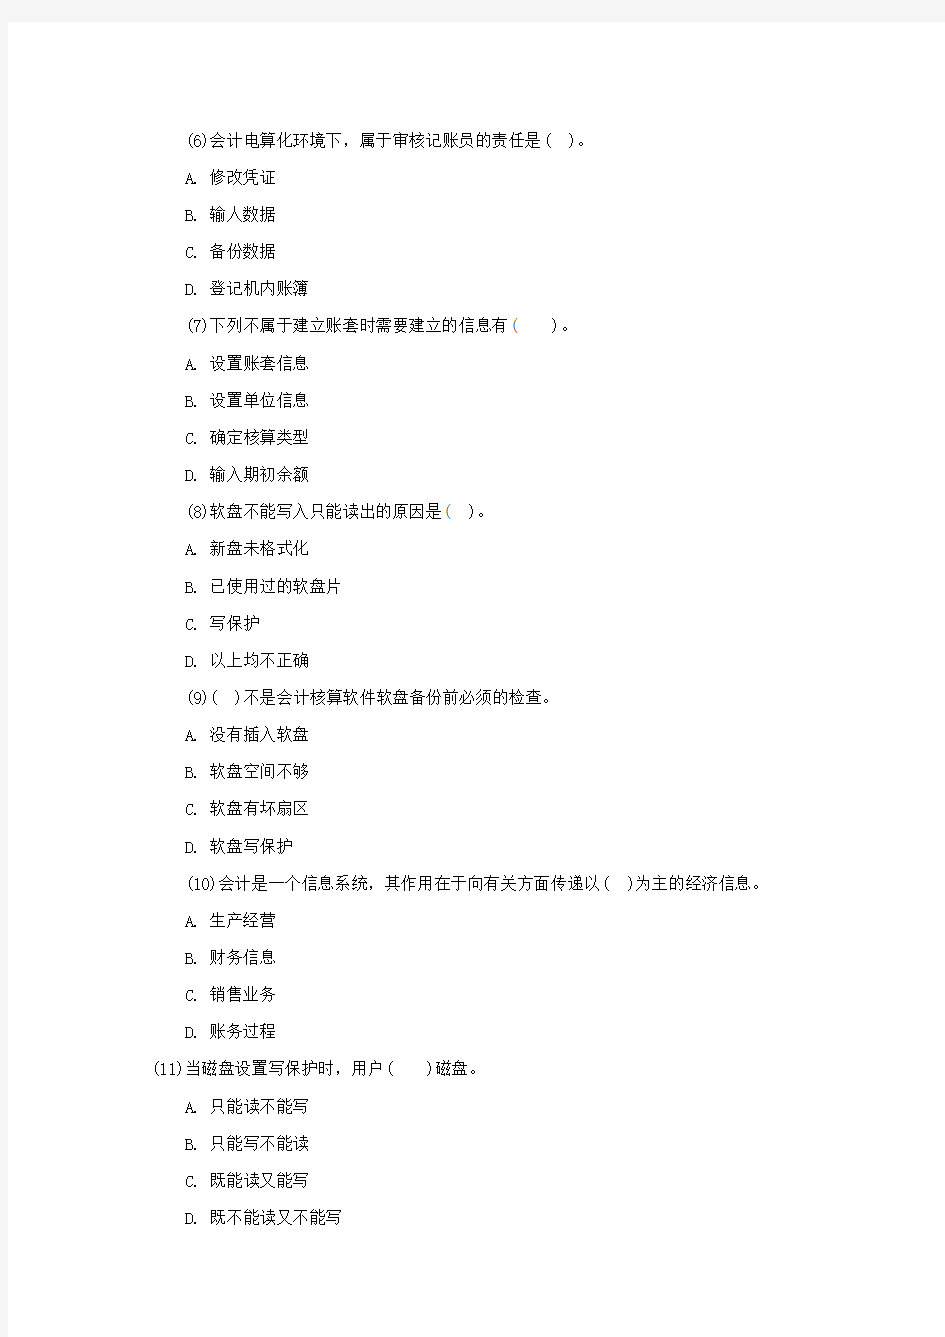 天津2014年会计证考试会计电算化试题第九套